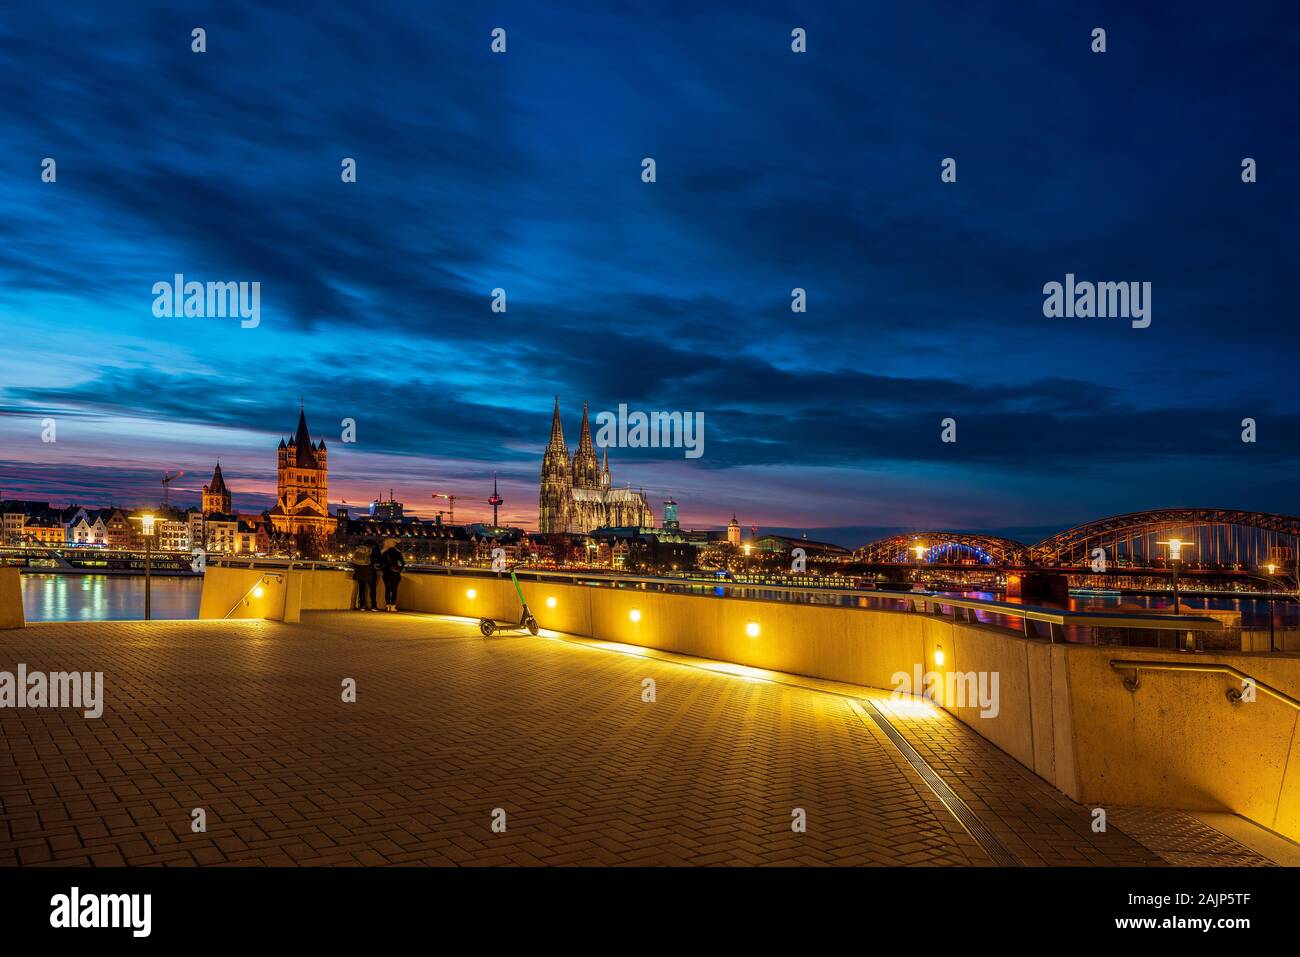 Vue panoramique sur la cathédrale de Cologne au coucher du soleil Banque D'Images